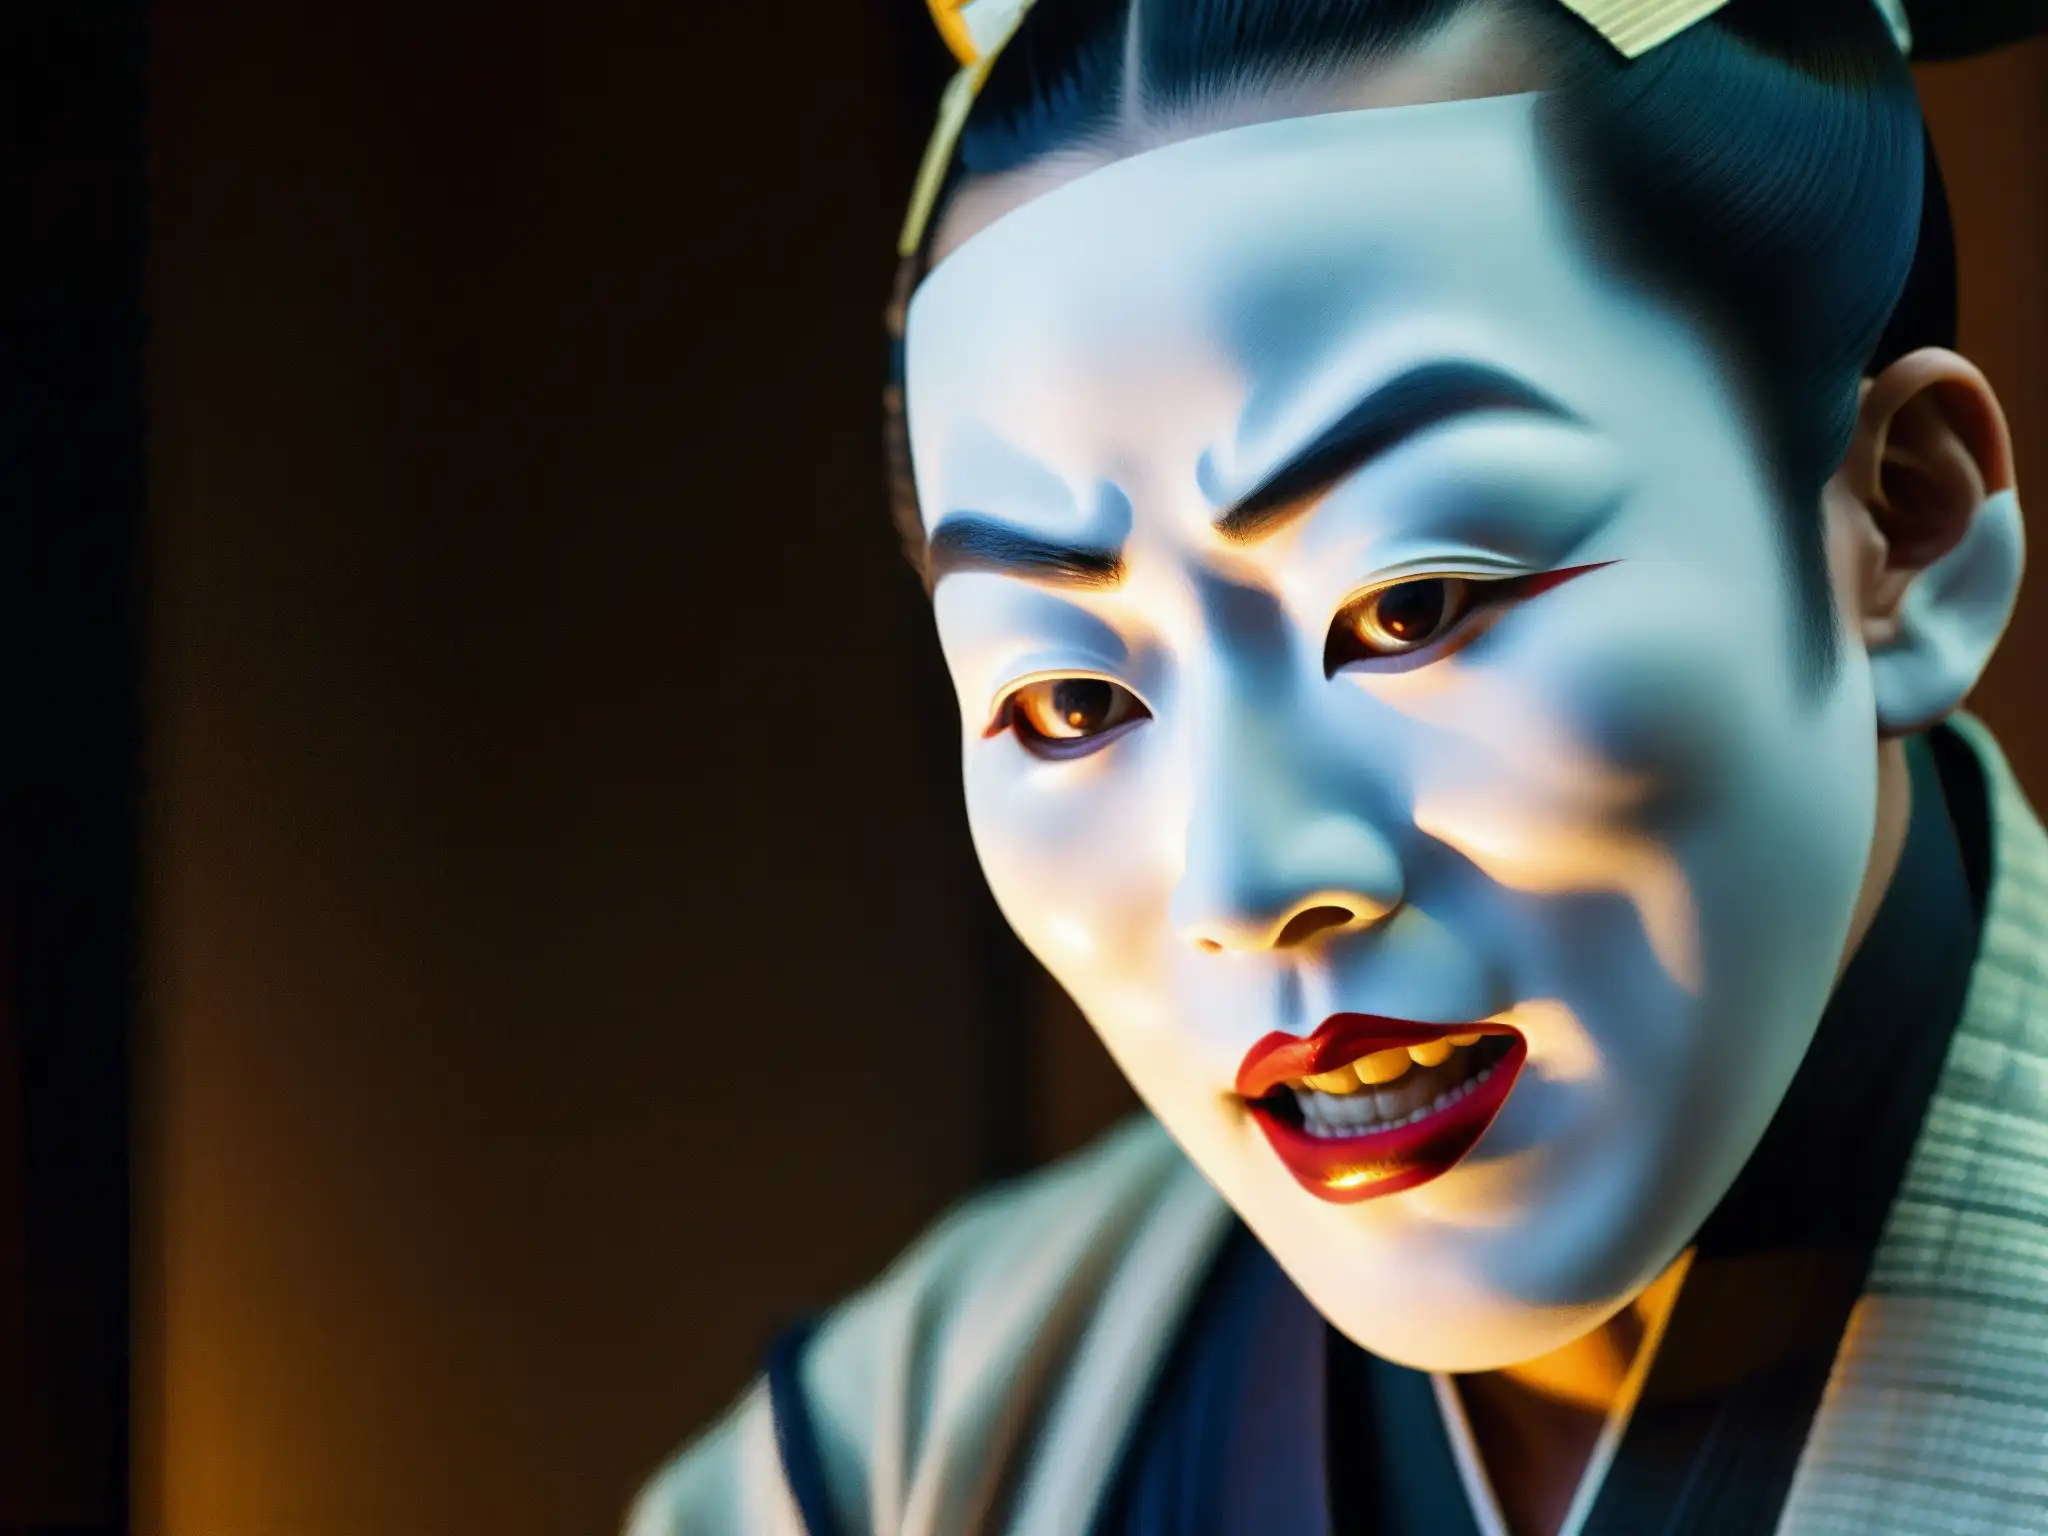 Intenso drama en la actuación teatral japonesa de Noh, con la Mujer de la Nieve, evocando misterio y cultura